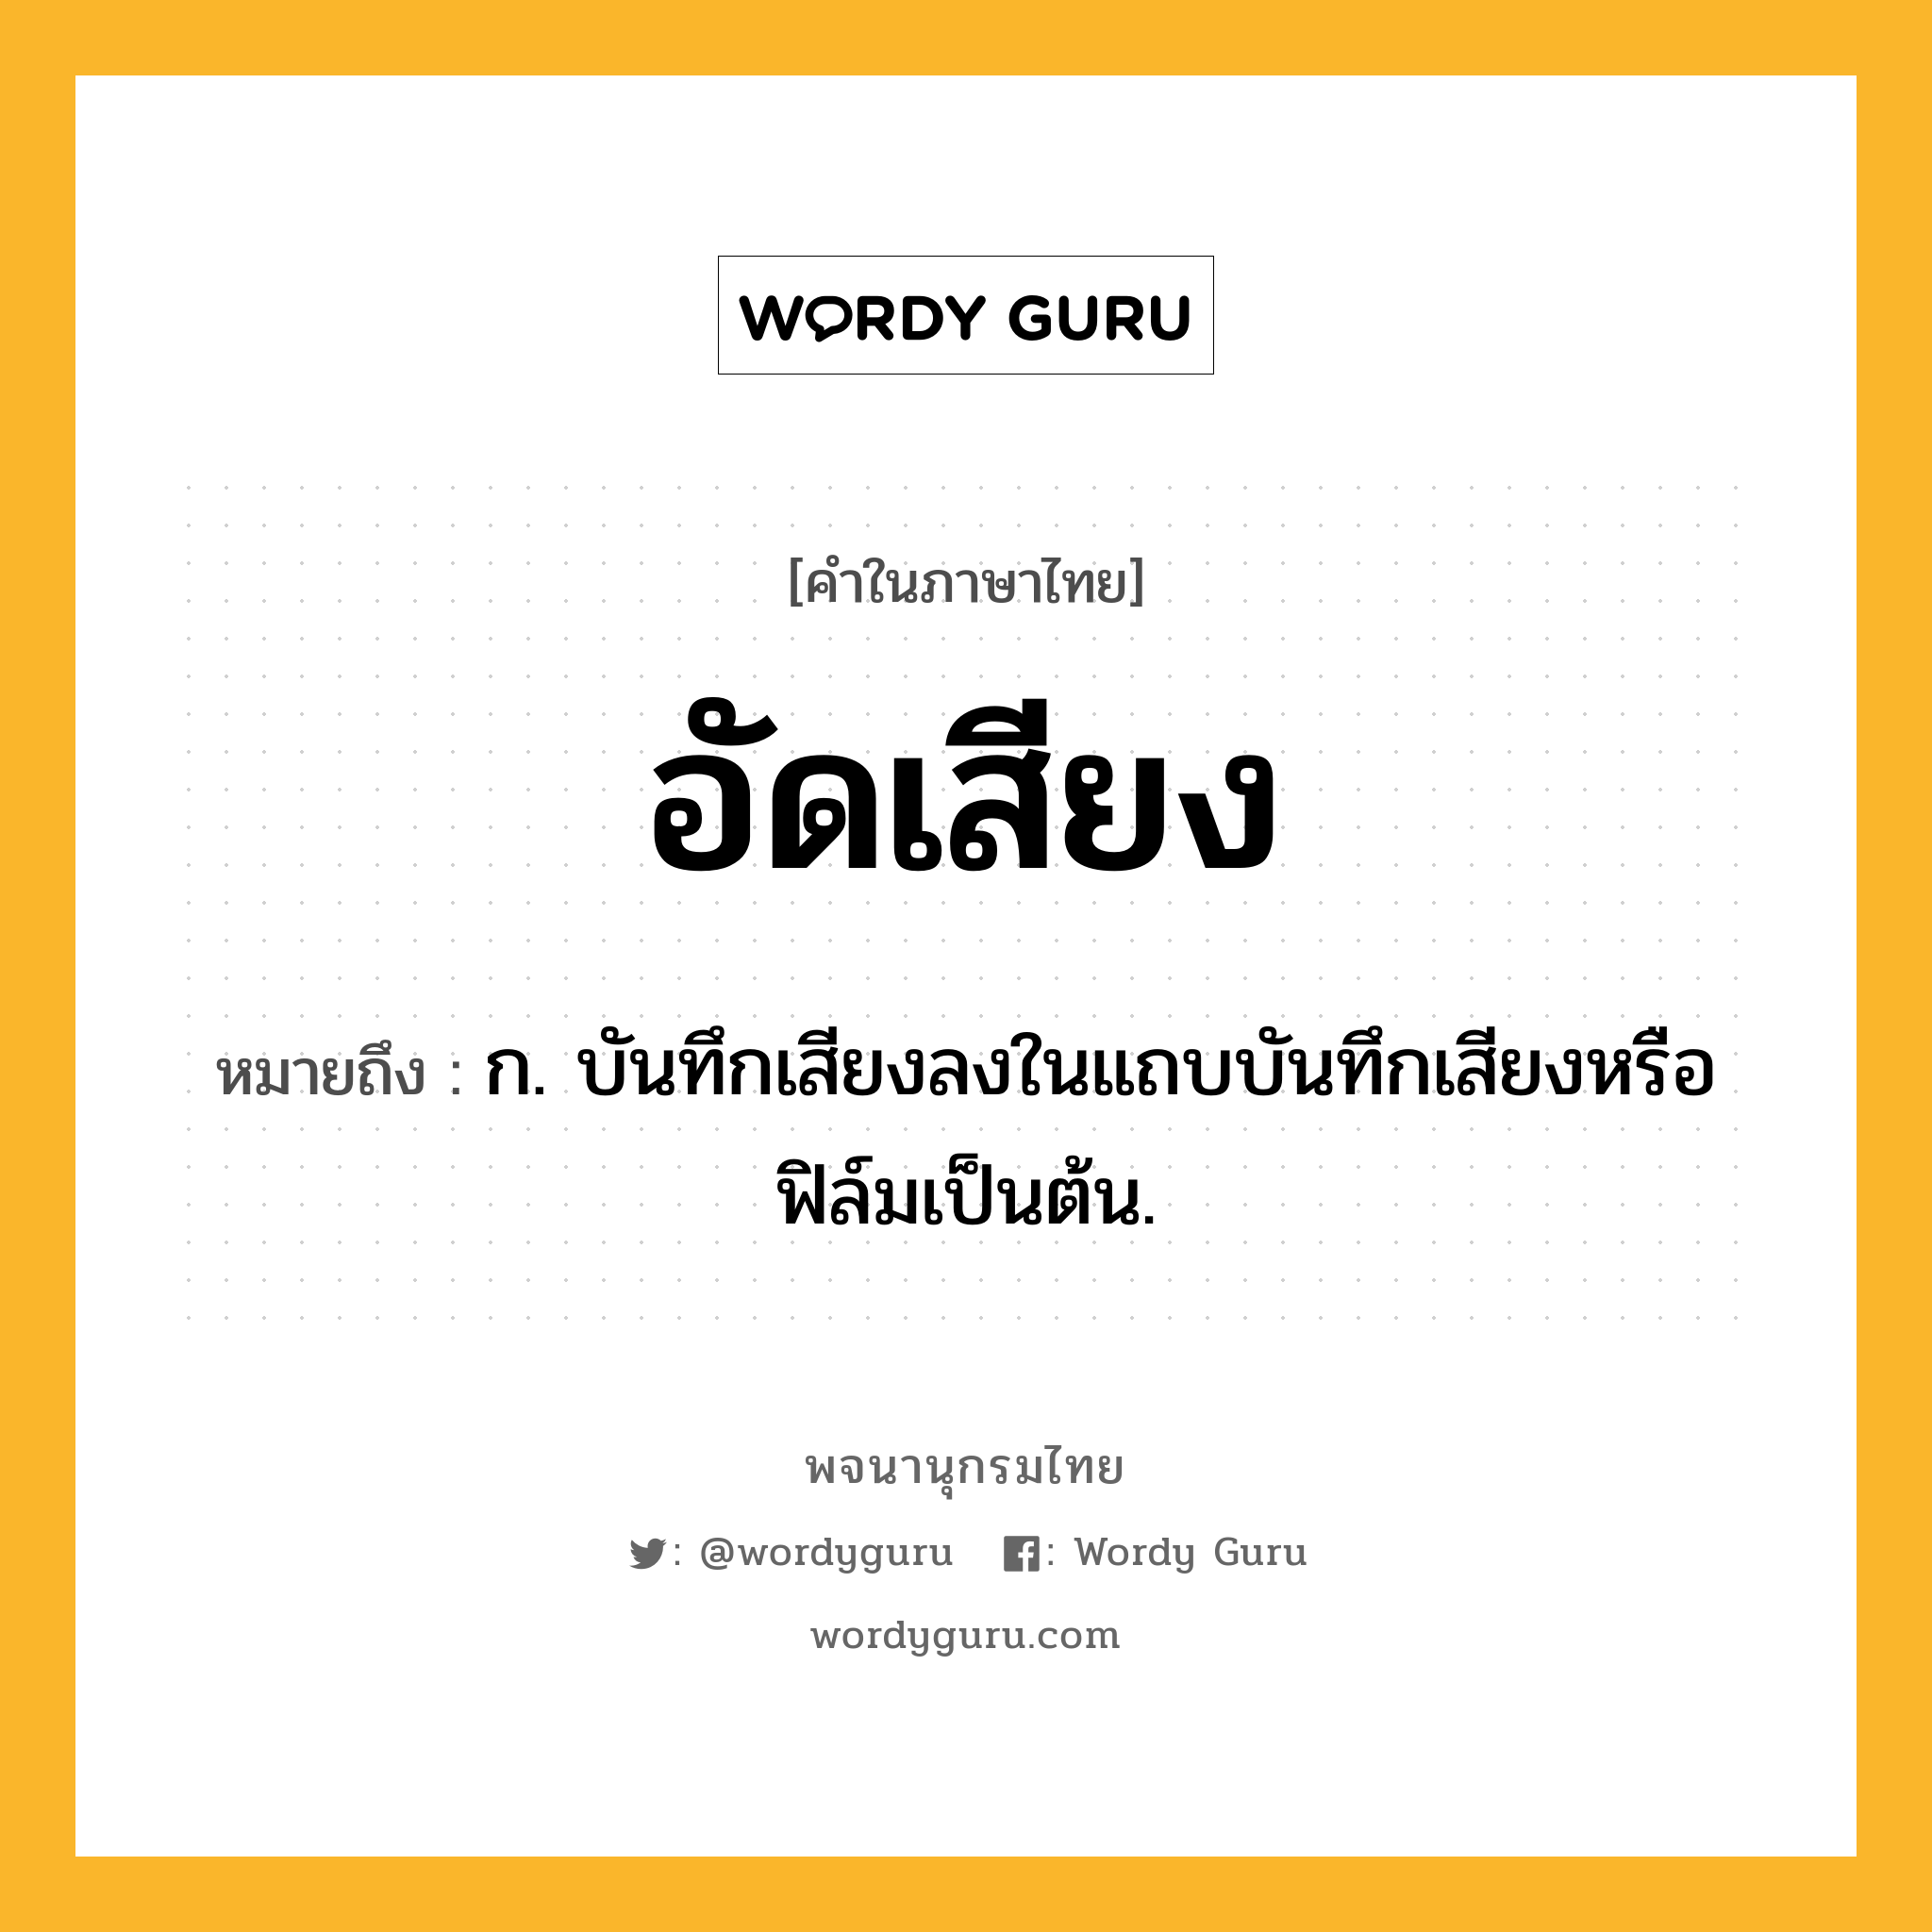 อัดเสียง ความหมาย หมายถึงอะไร?, คำในภาษาไทย อัดเสียง หมายถึง ก. บันทึกเสียงลงในแถบบันทึกเสียงหรือฟิล์มเป็นต้น.